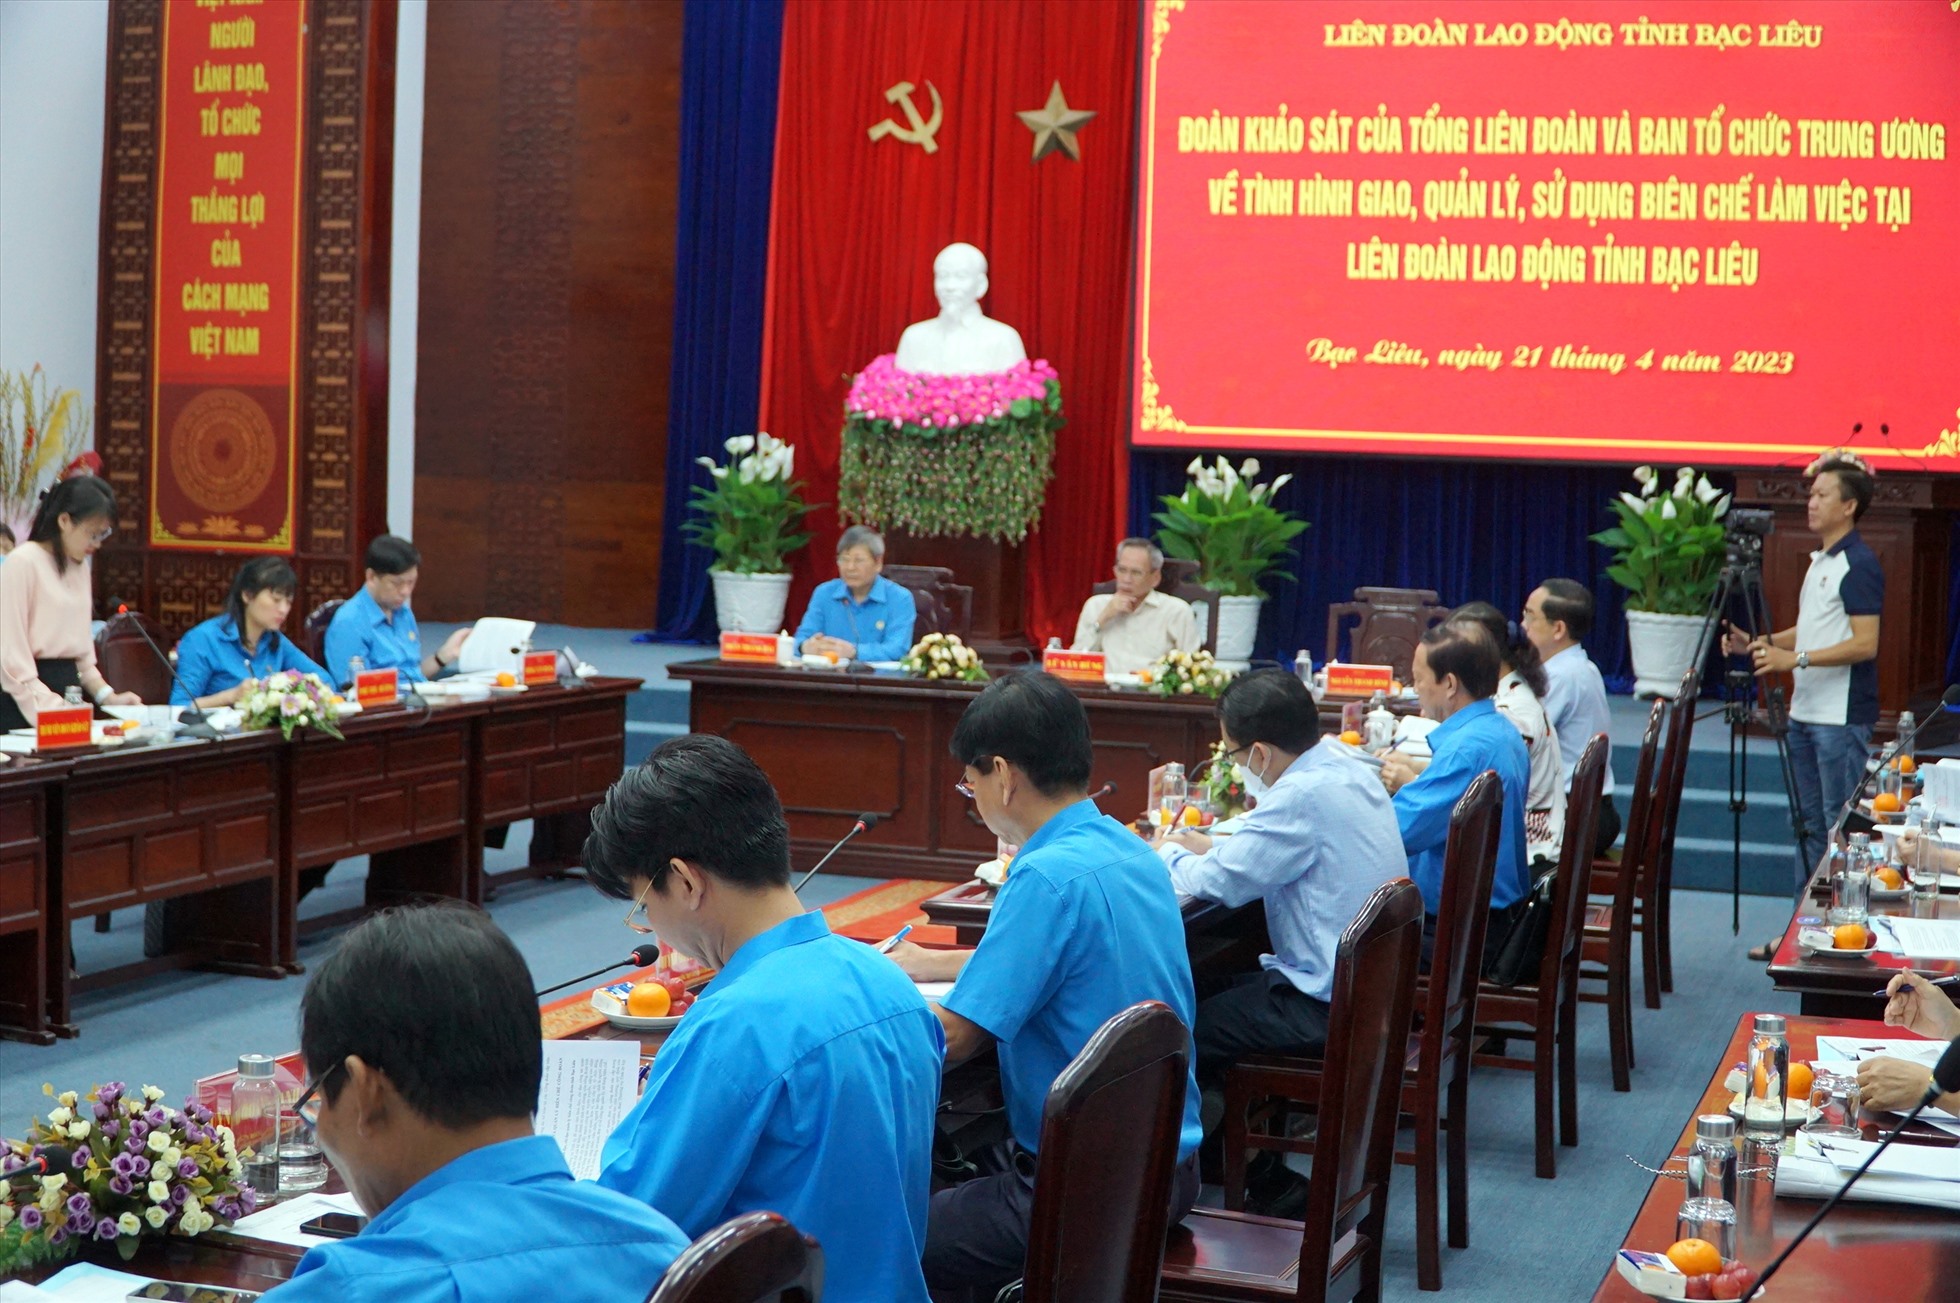 Phó Chủ tịch Thường trực Tổng LĐLĐ Việt Nam Trần Thanh Hải đề nghị cán bộ công đoàn cần nâng cao hoạt động gần hơn nữa với công nhân lao động. Ảnh: Nhật Hồ